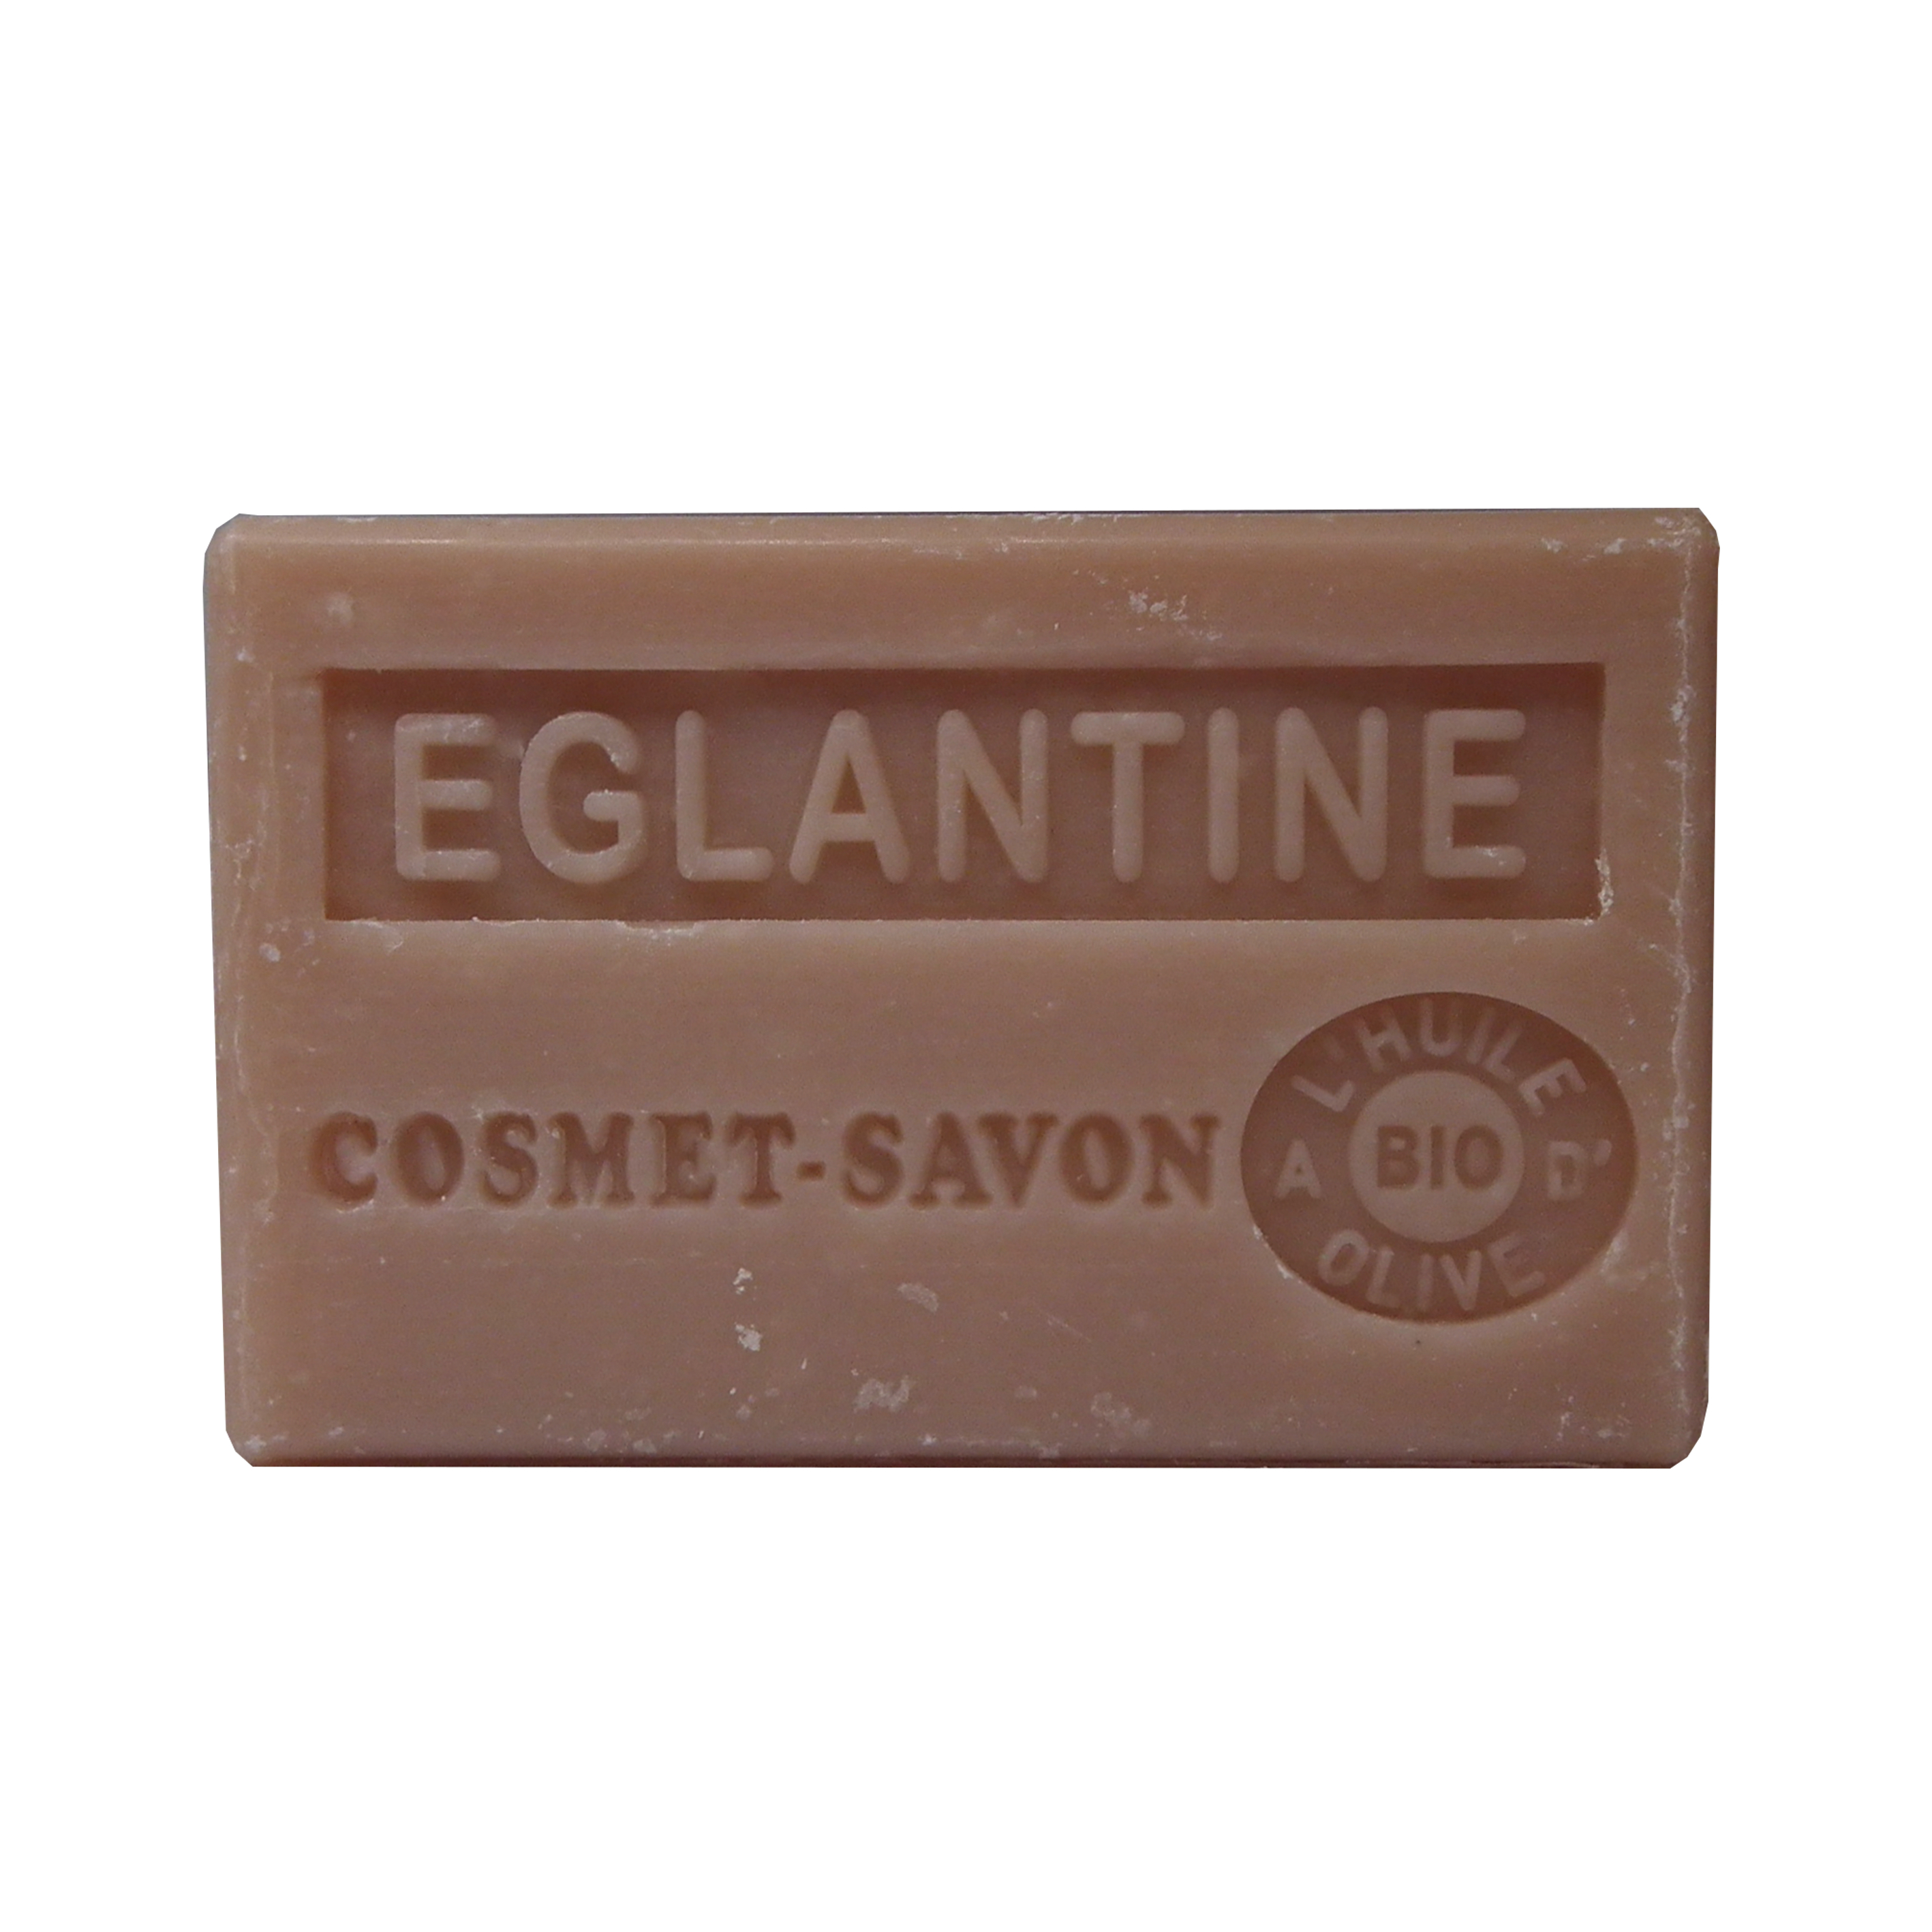 eglantine-savon-125gr-au-beurre-de-karite-bio-cosmet-savon-3665205006256-face-JPEG